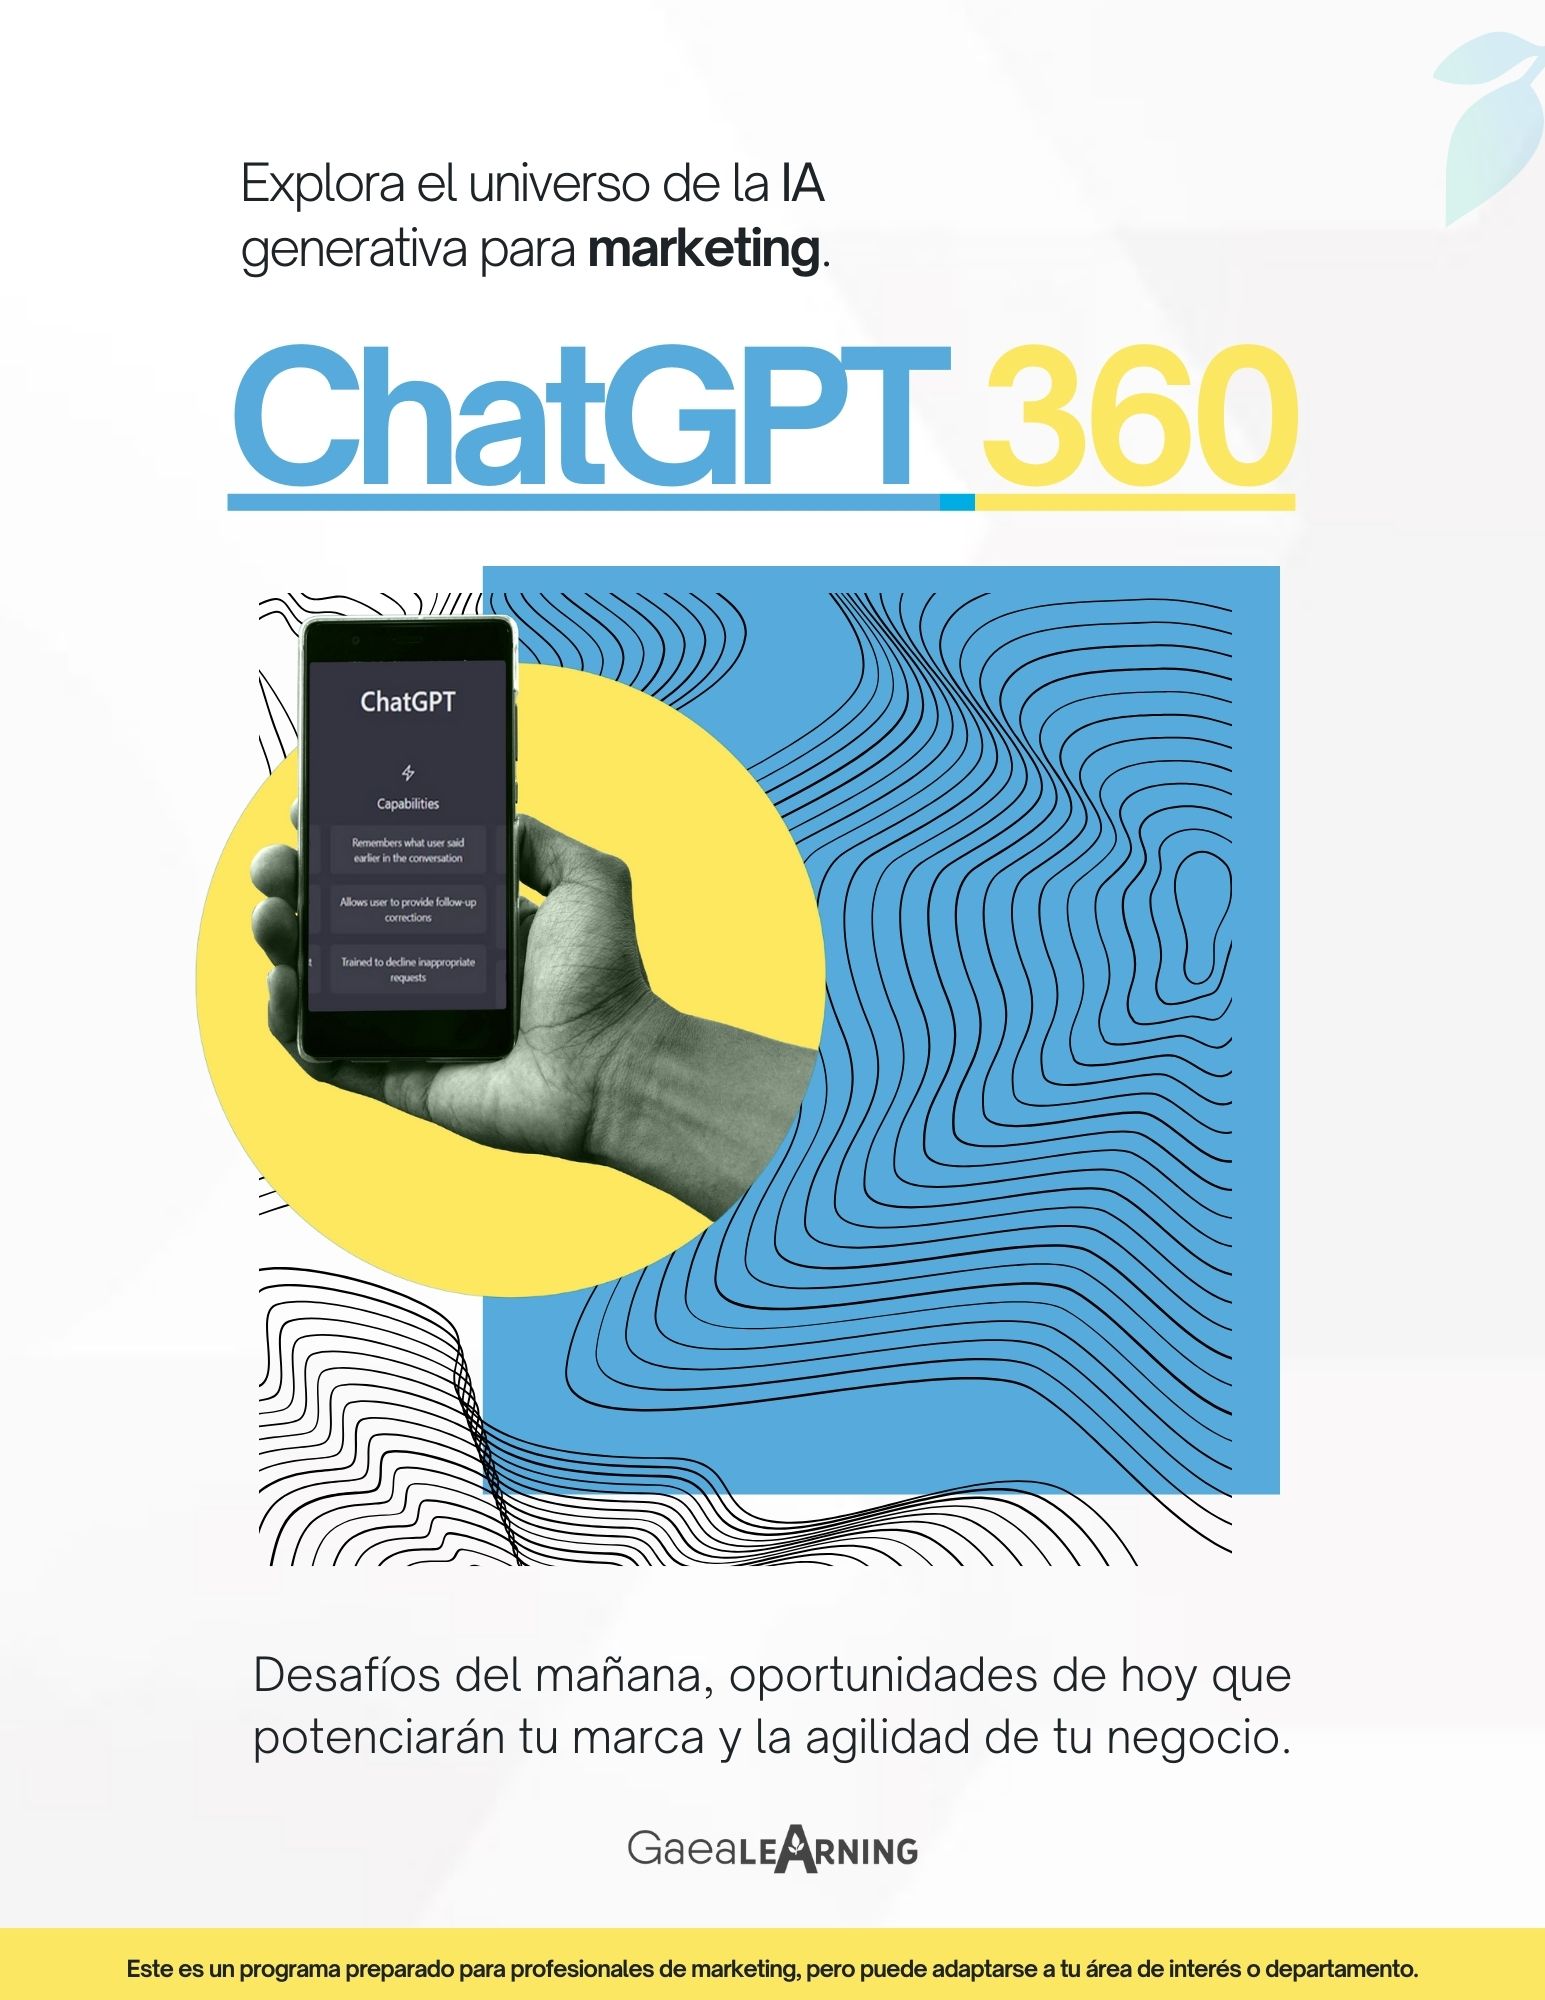 ChatGPT 360: Explora el universo de la IA generativa para marketing